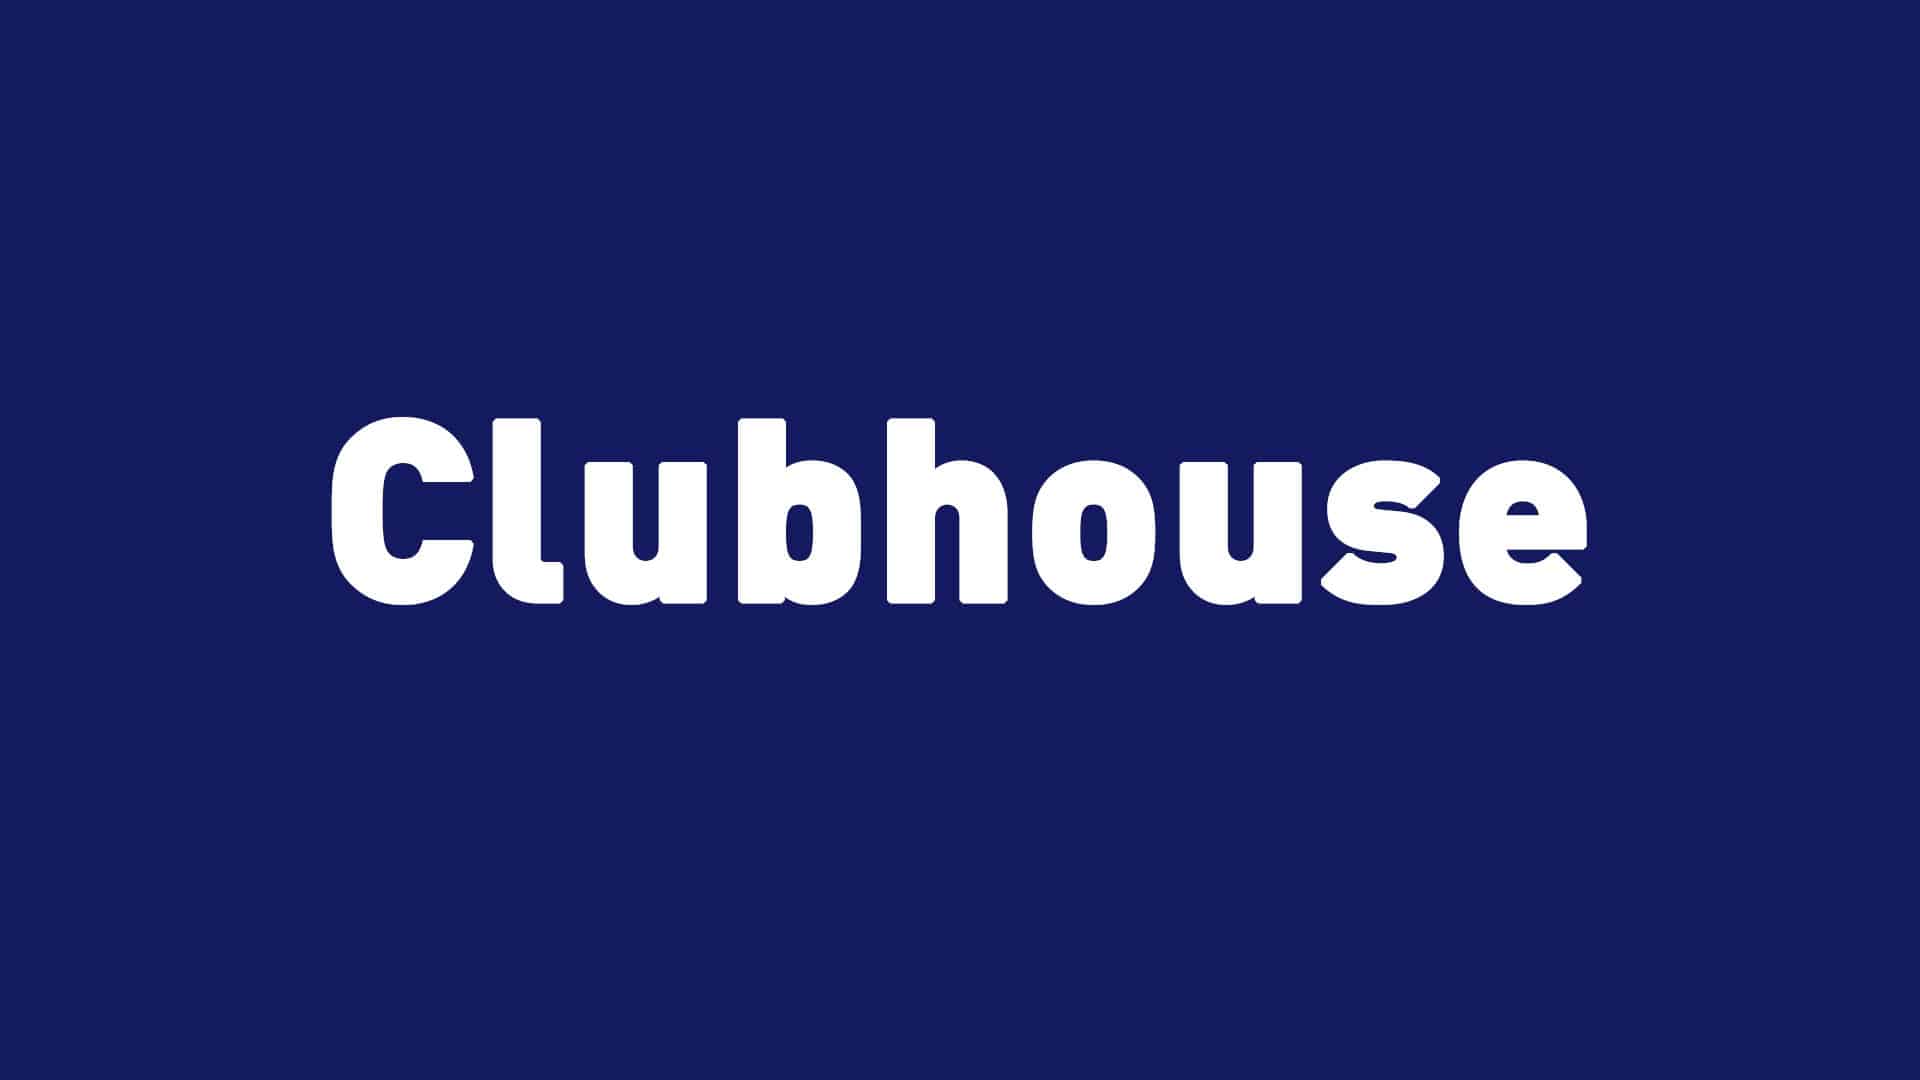 Angriff auf Clubhouse – Facebook und Twitter kopieren die Audiofunktion